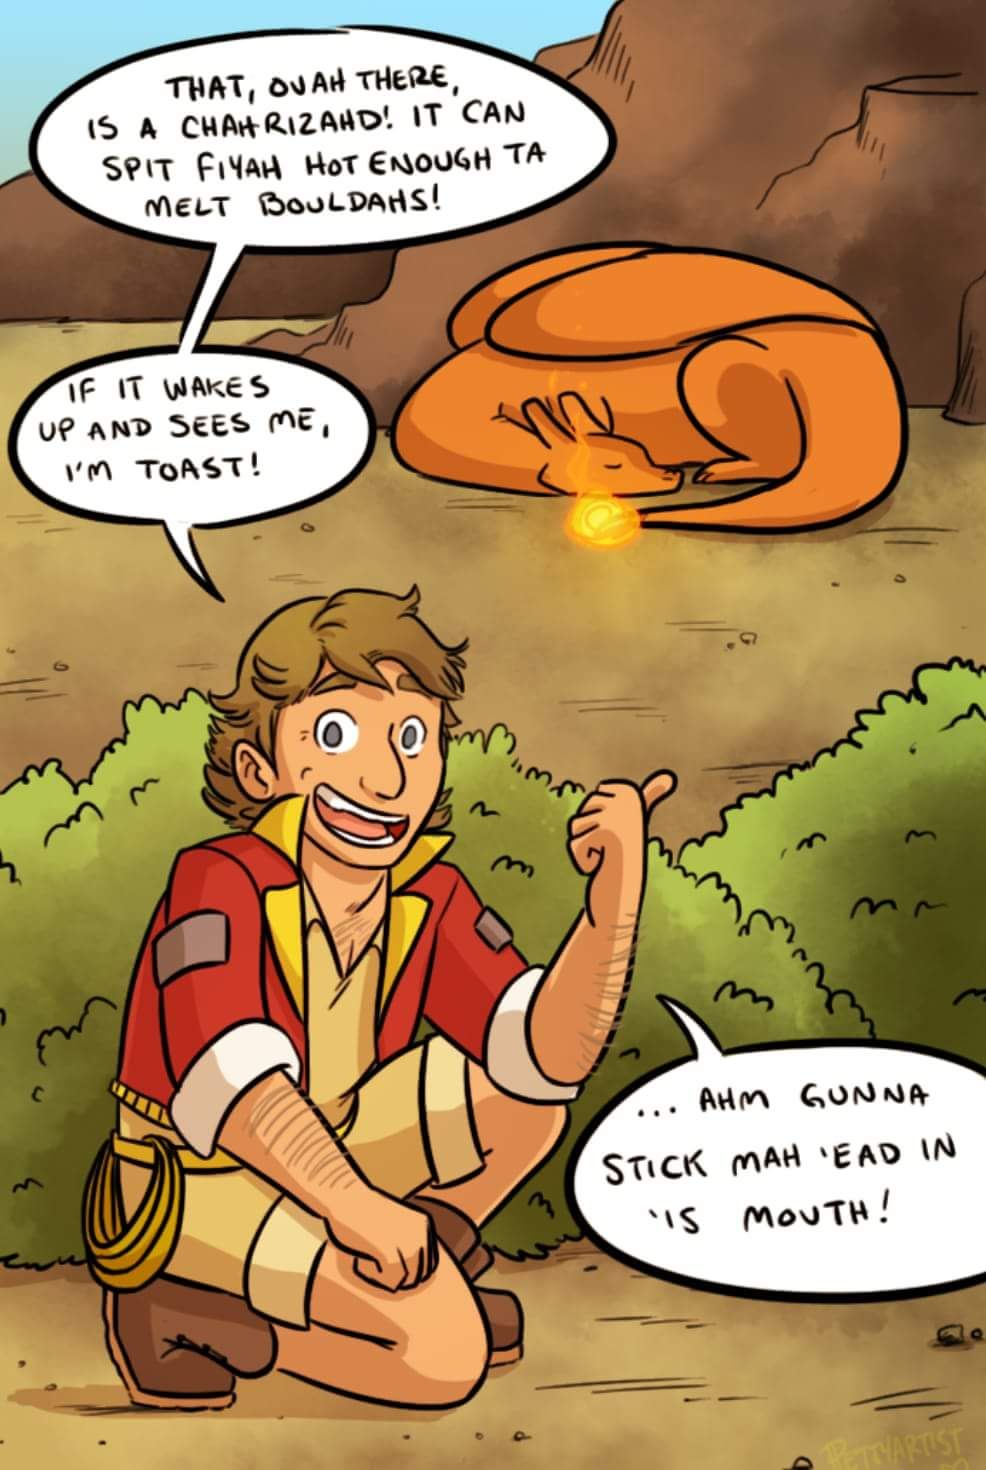 If Steve Irwin was in the Pokémon Universe